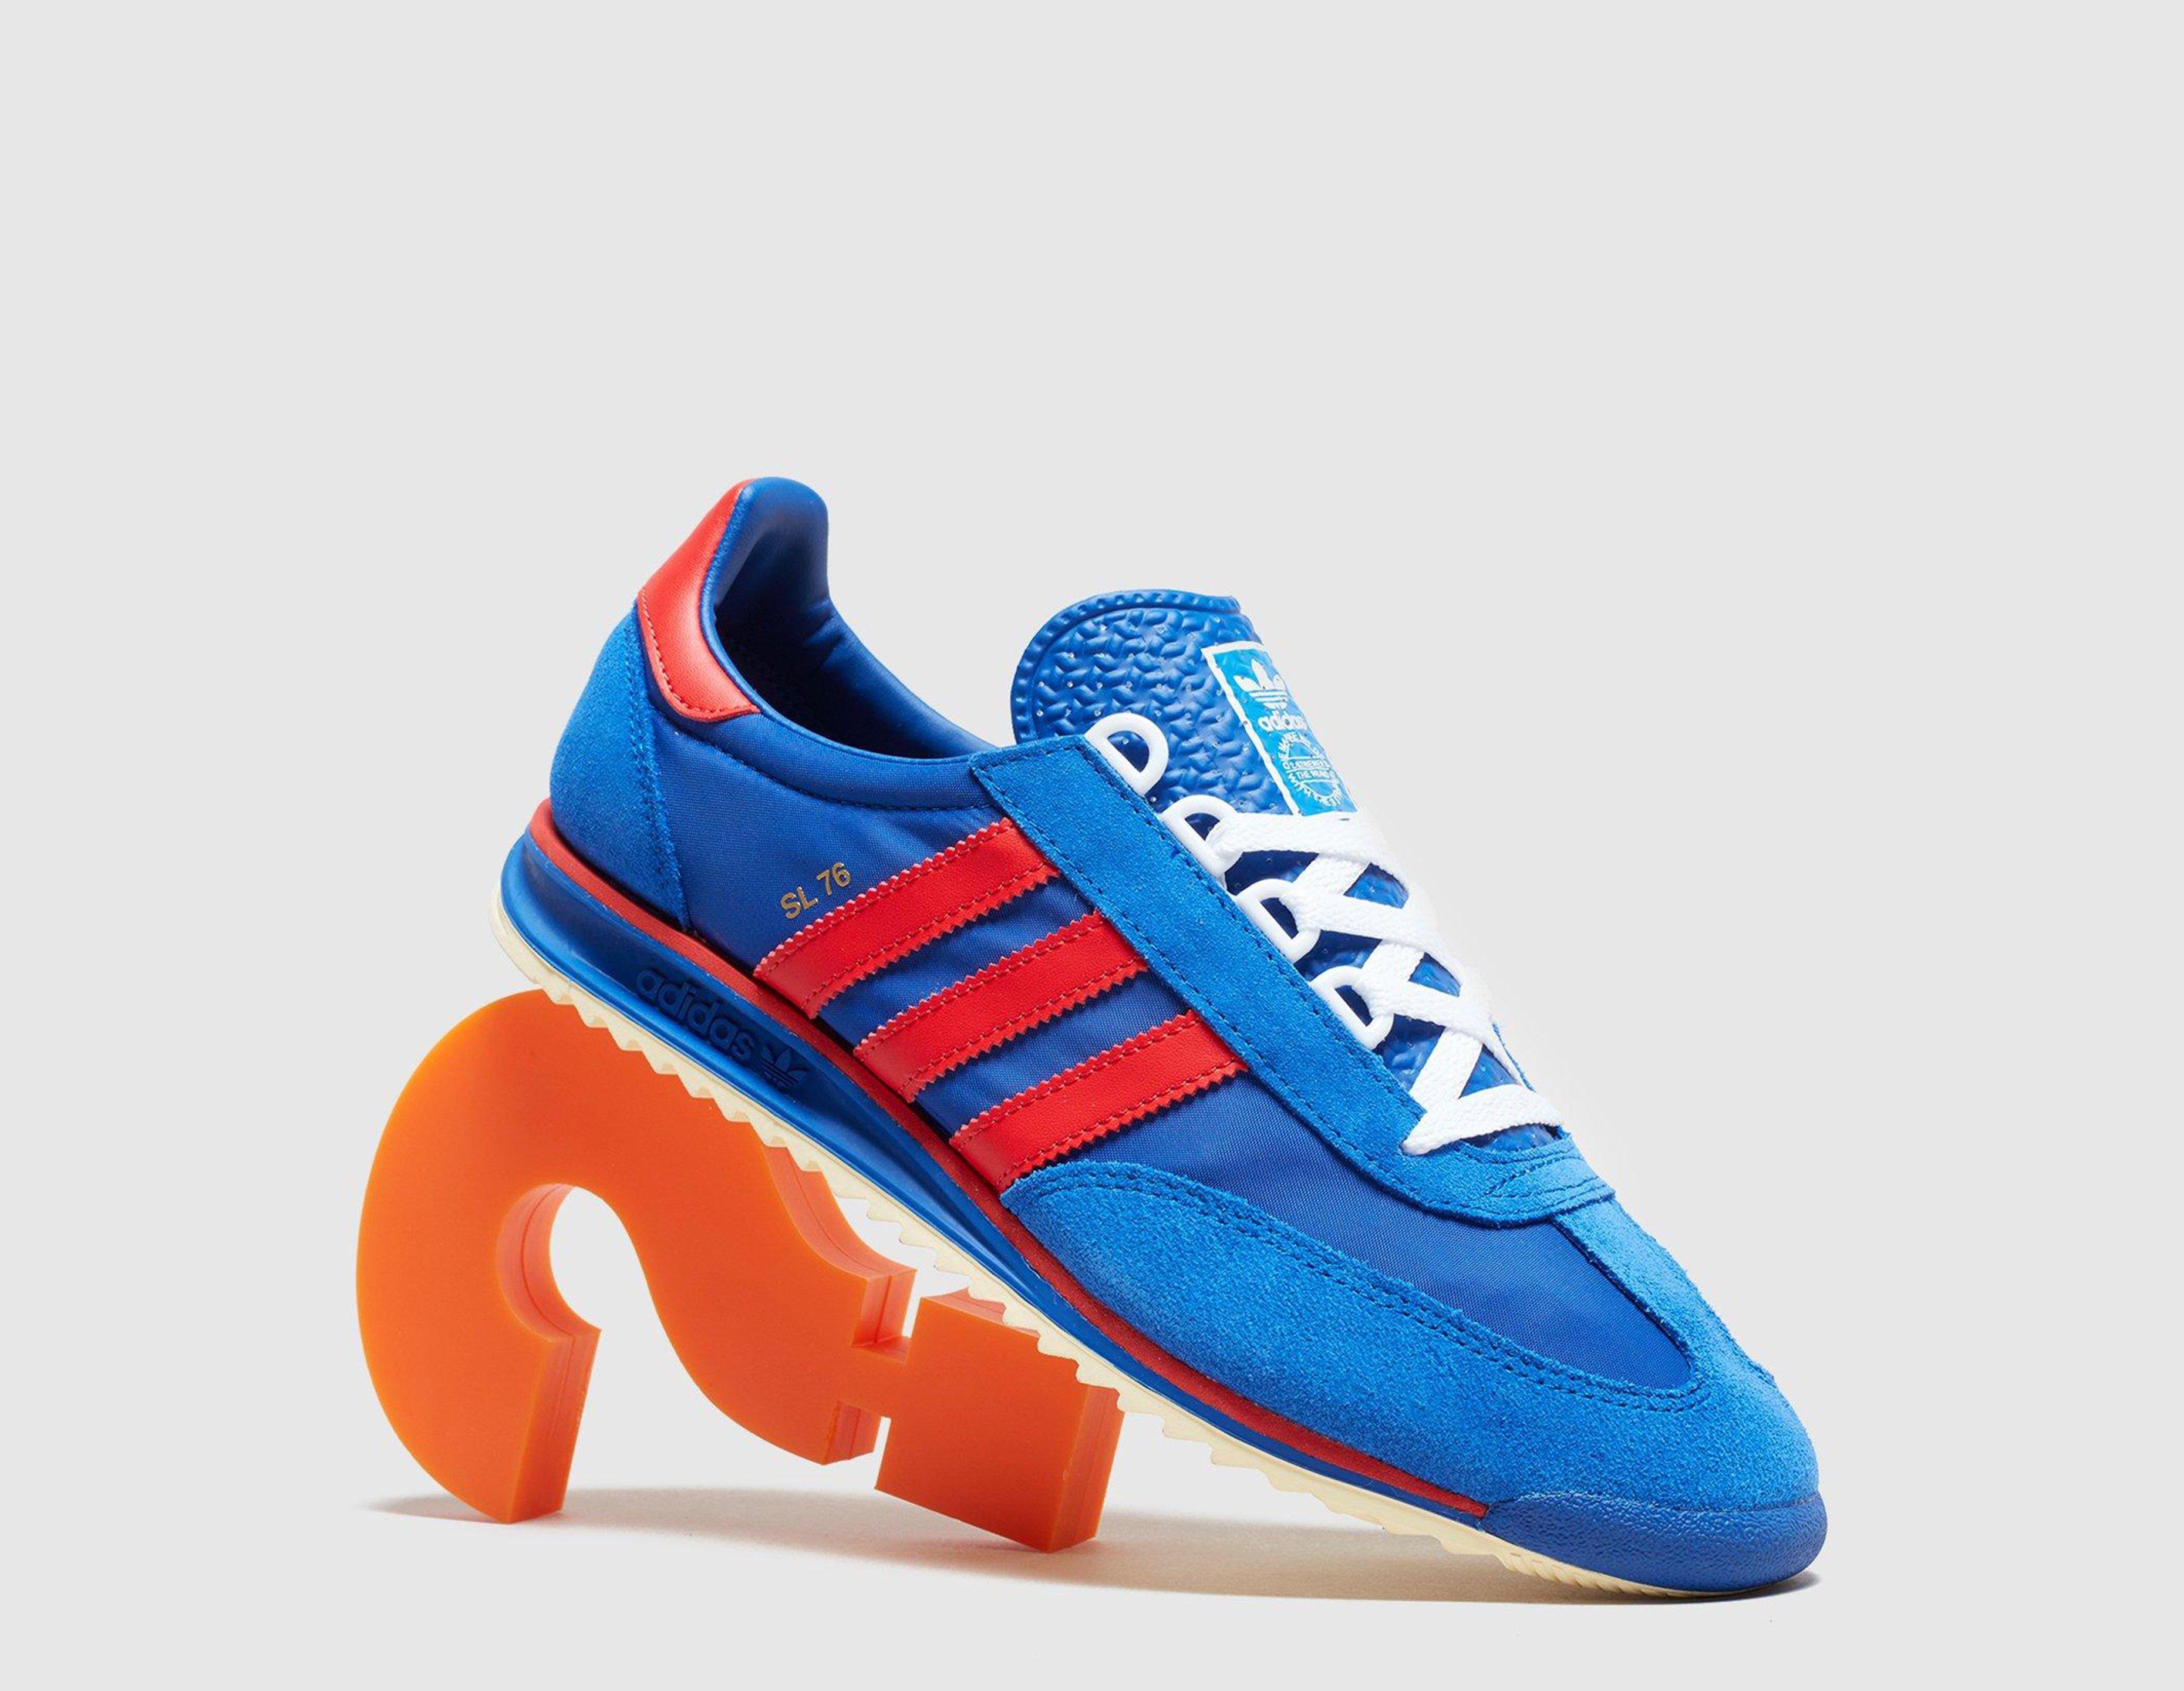 adidas sl76 blue red